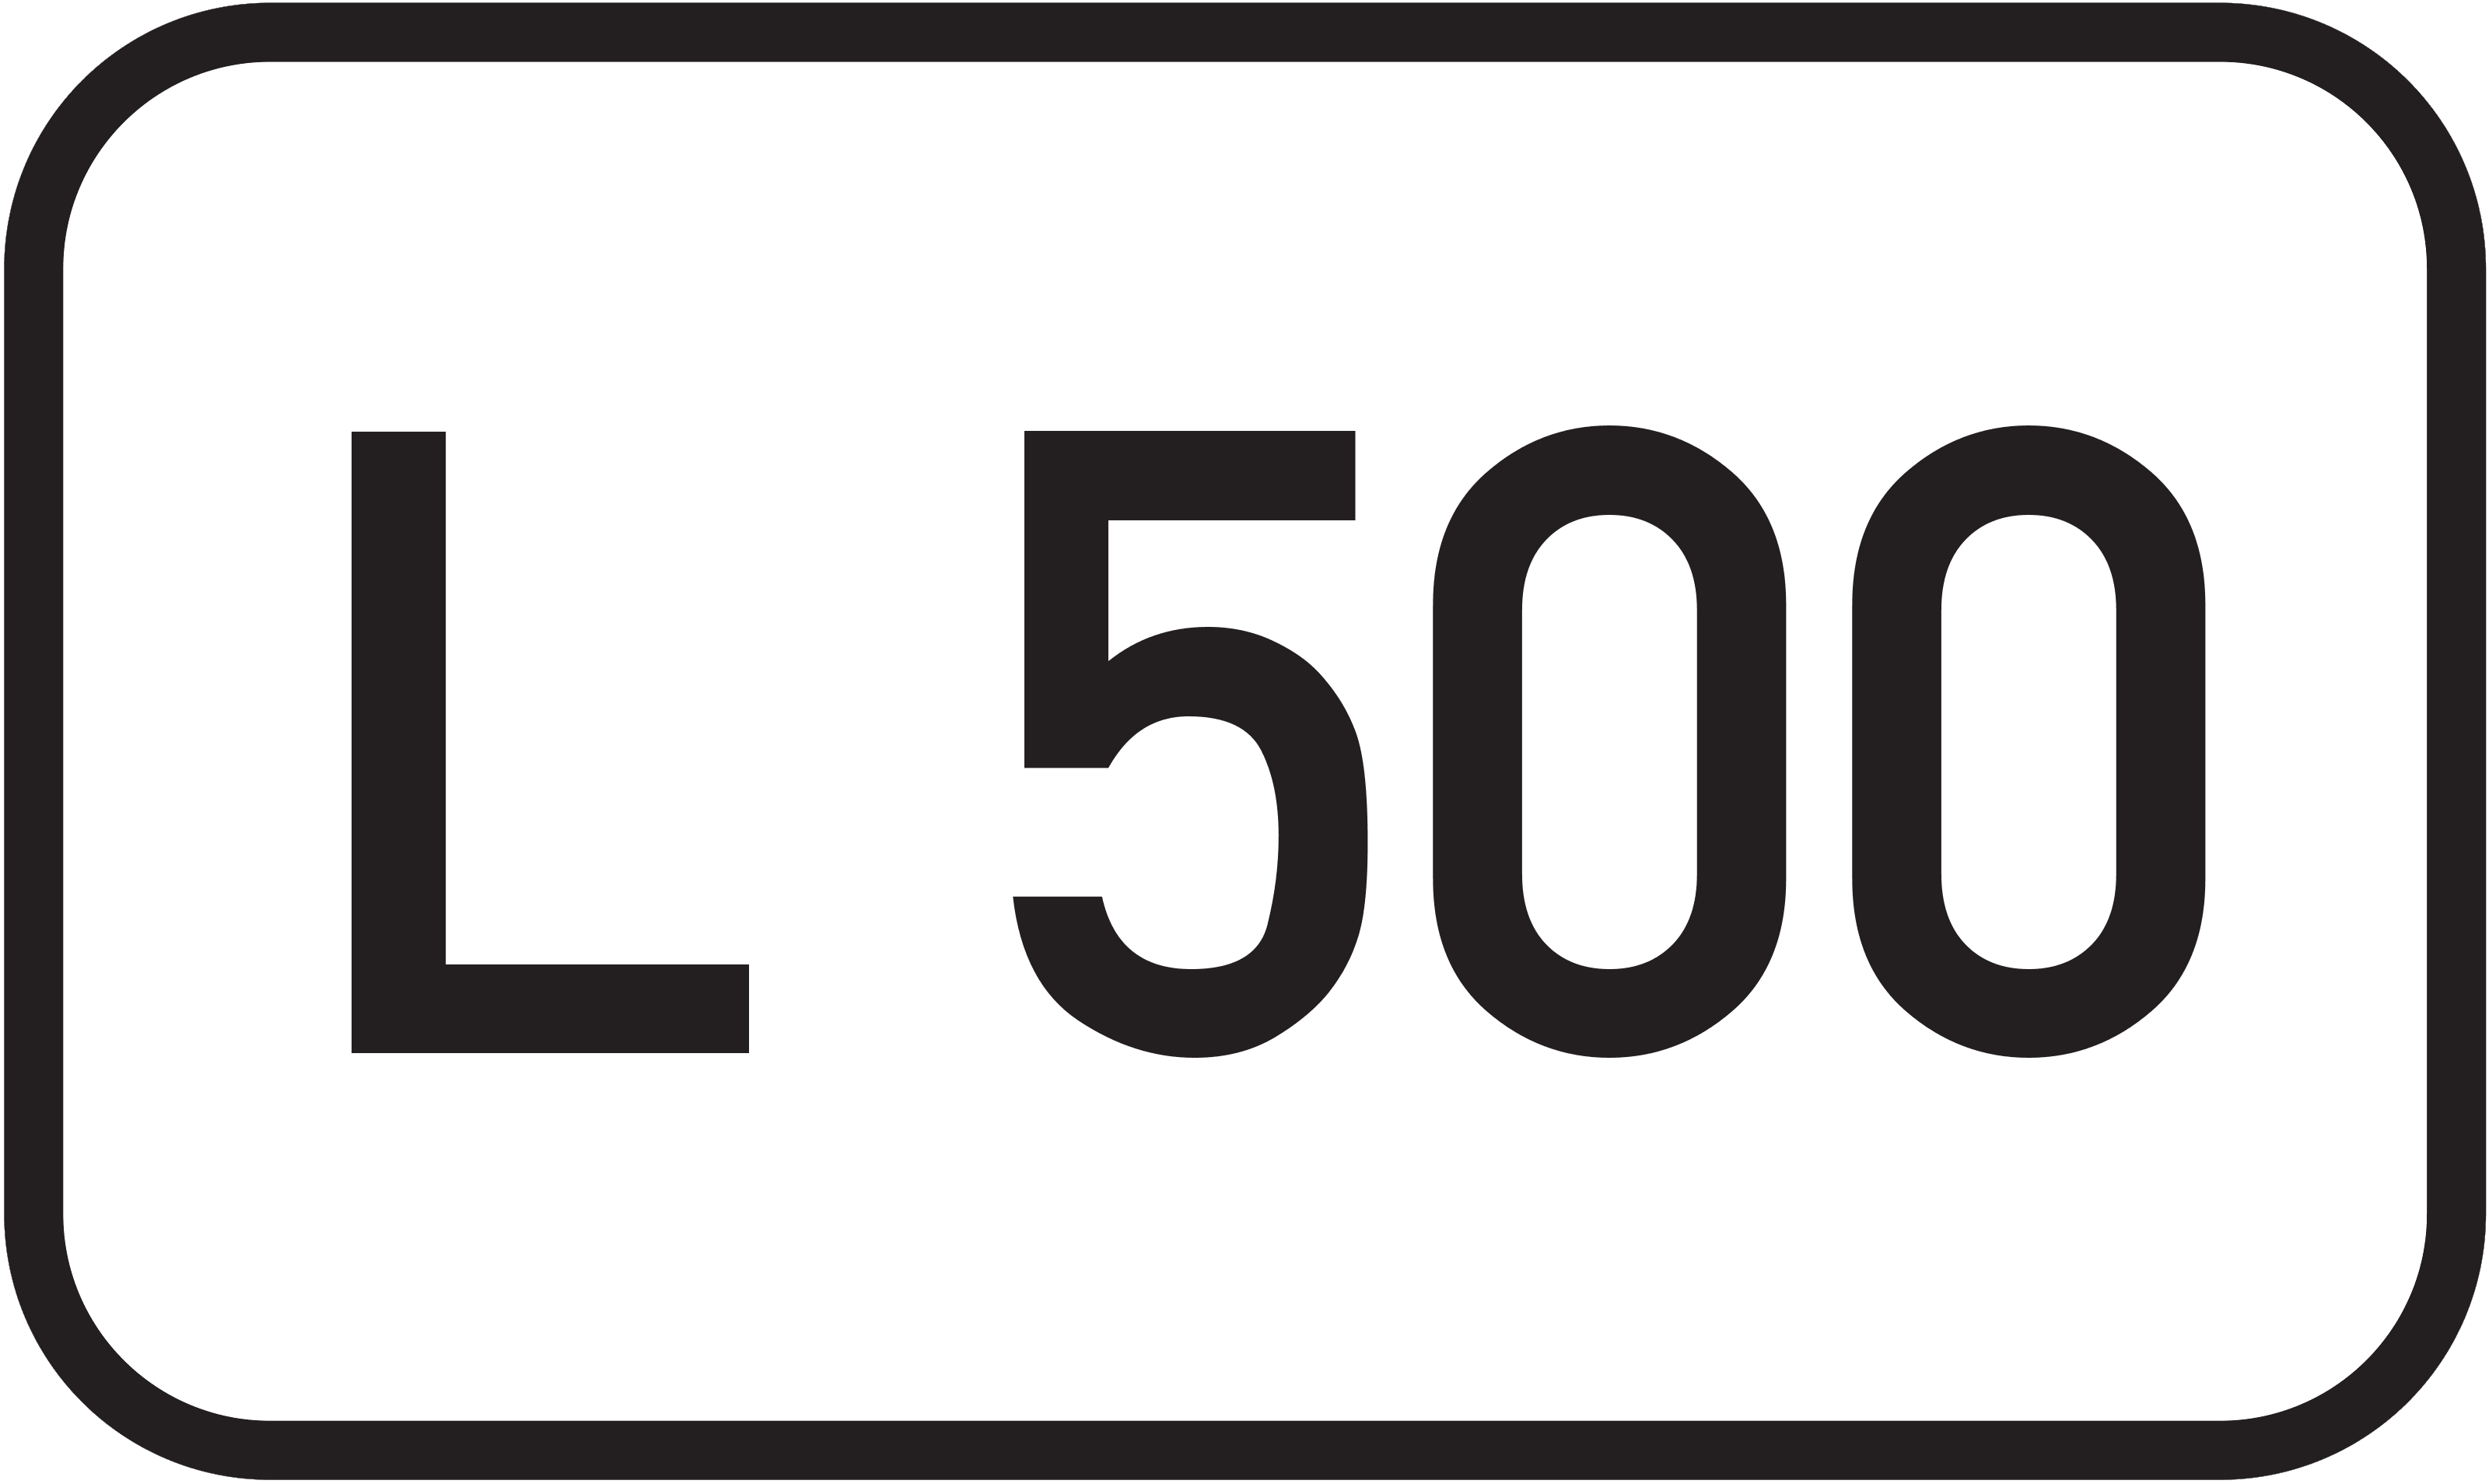 Landesstraße L 500